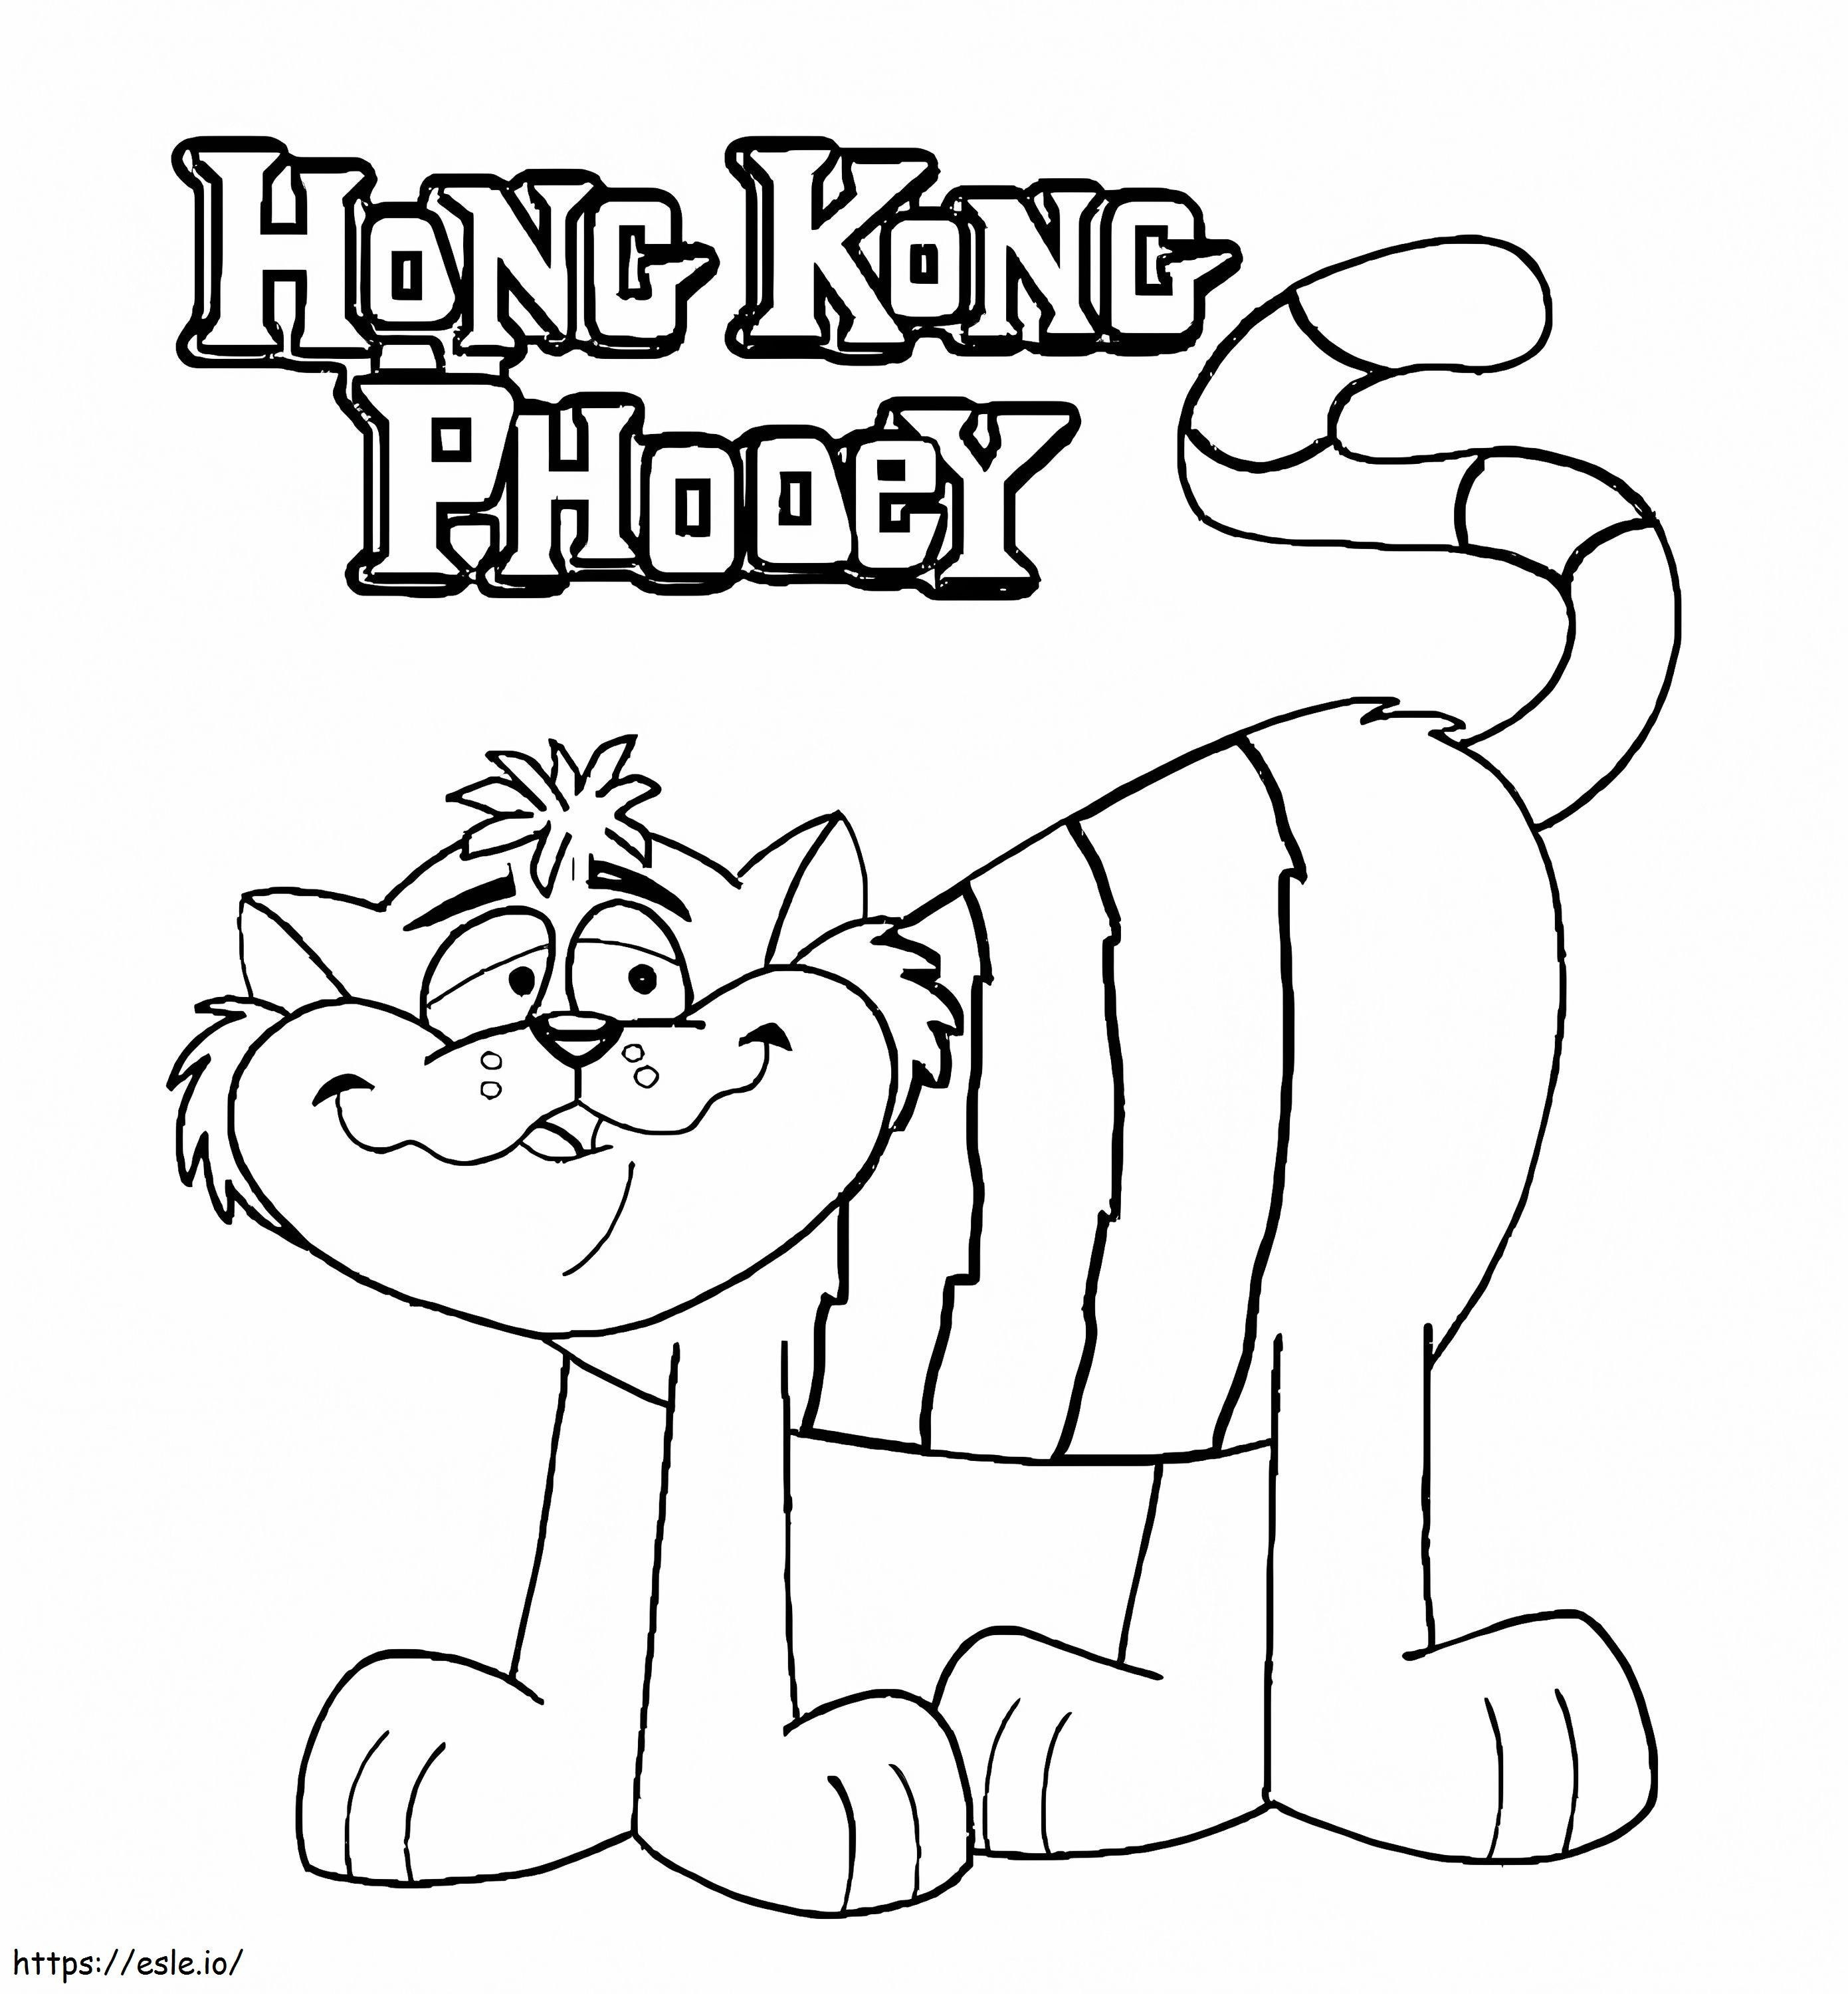 Spot Hong Kong Phooey kolorowanka